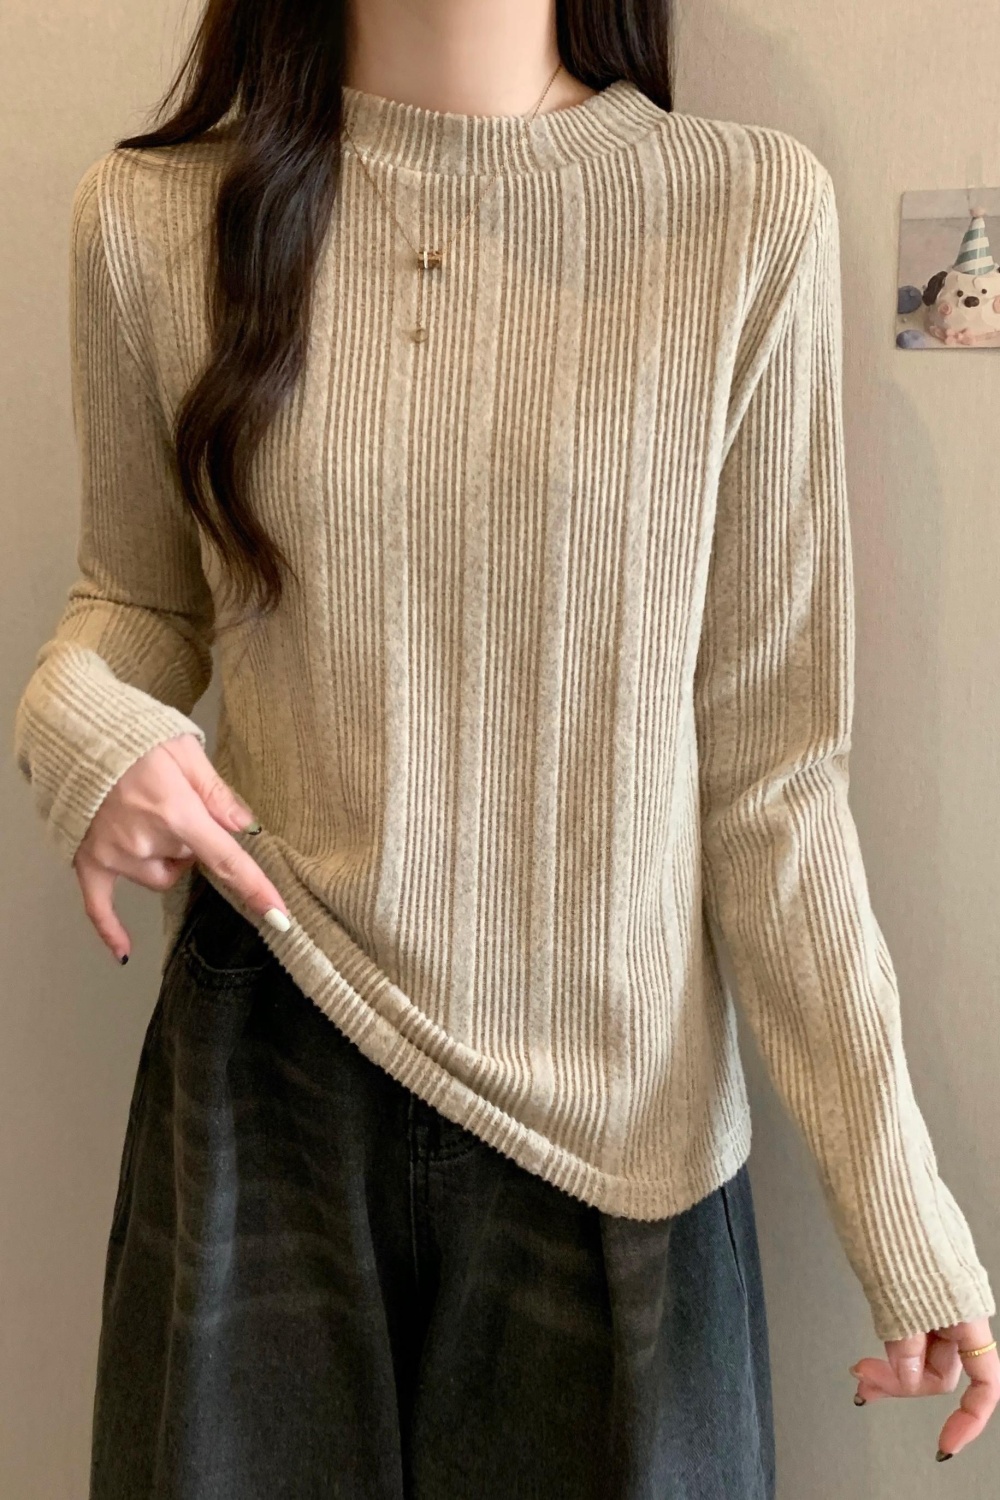 Fashion large yard sweater all-match bottoming shirt